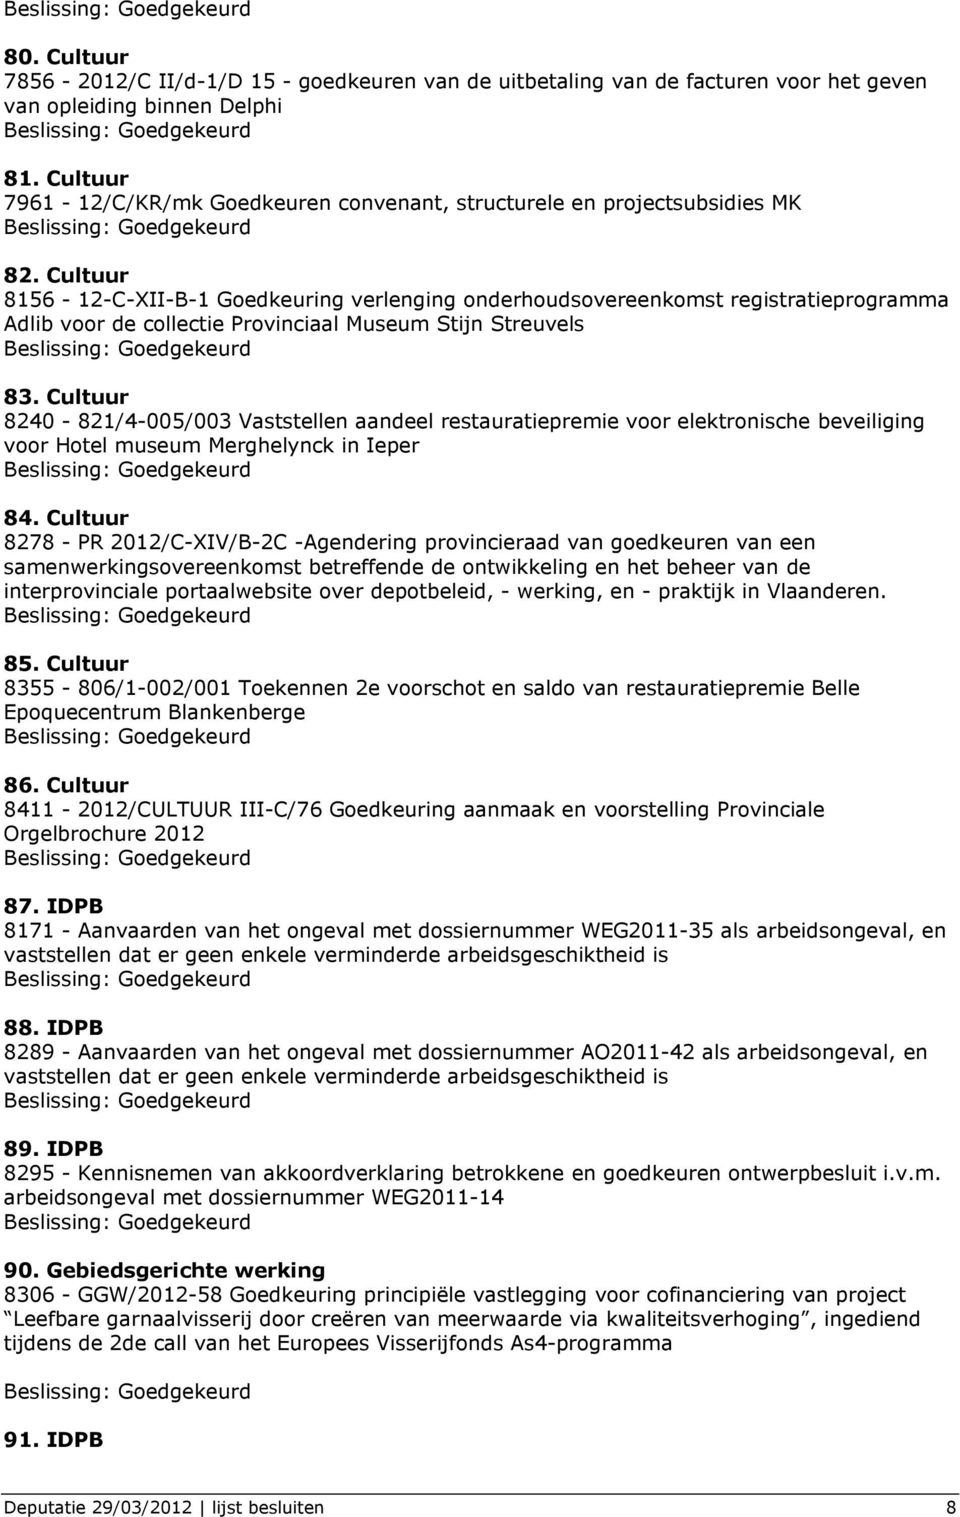 Cultuur 8156-12-C-XII-B-1 Goedkeuring verlenging onderhoudsovereenkomst registratieprogramma Adlib voor de collectie Provinciaal Museum Stijn Streuvels 83.